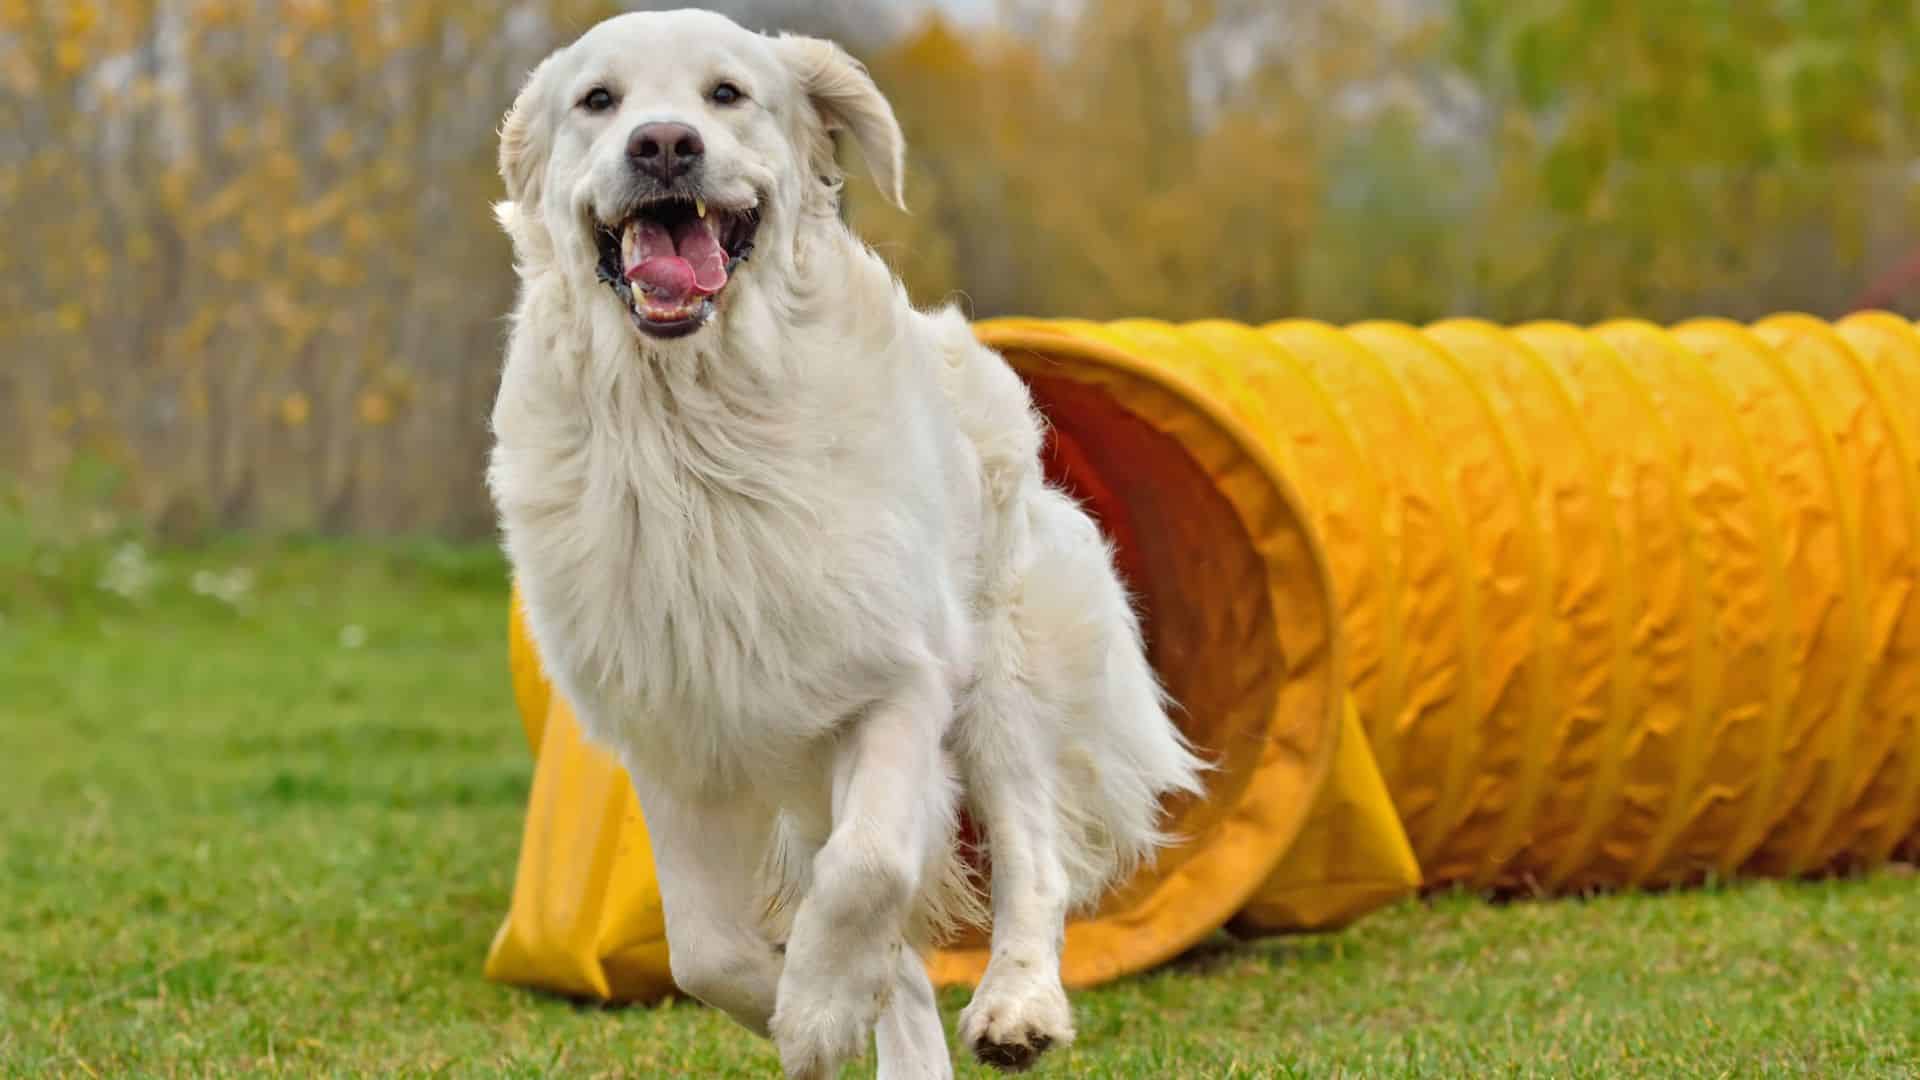 Dog Sports: A golden retriever running through a tunnel